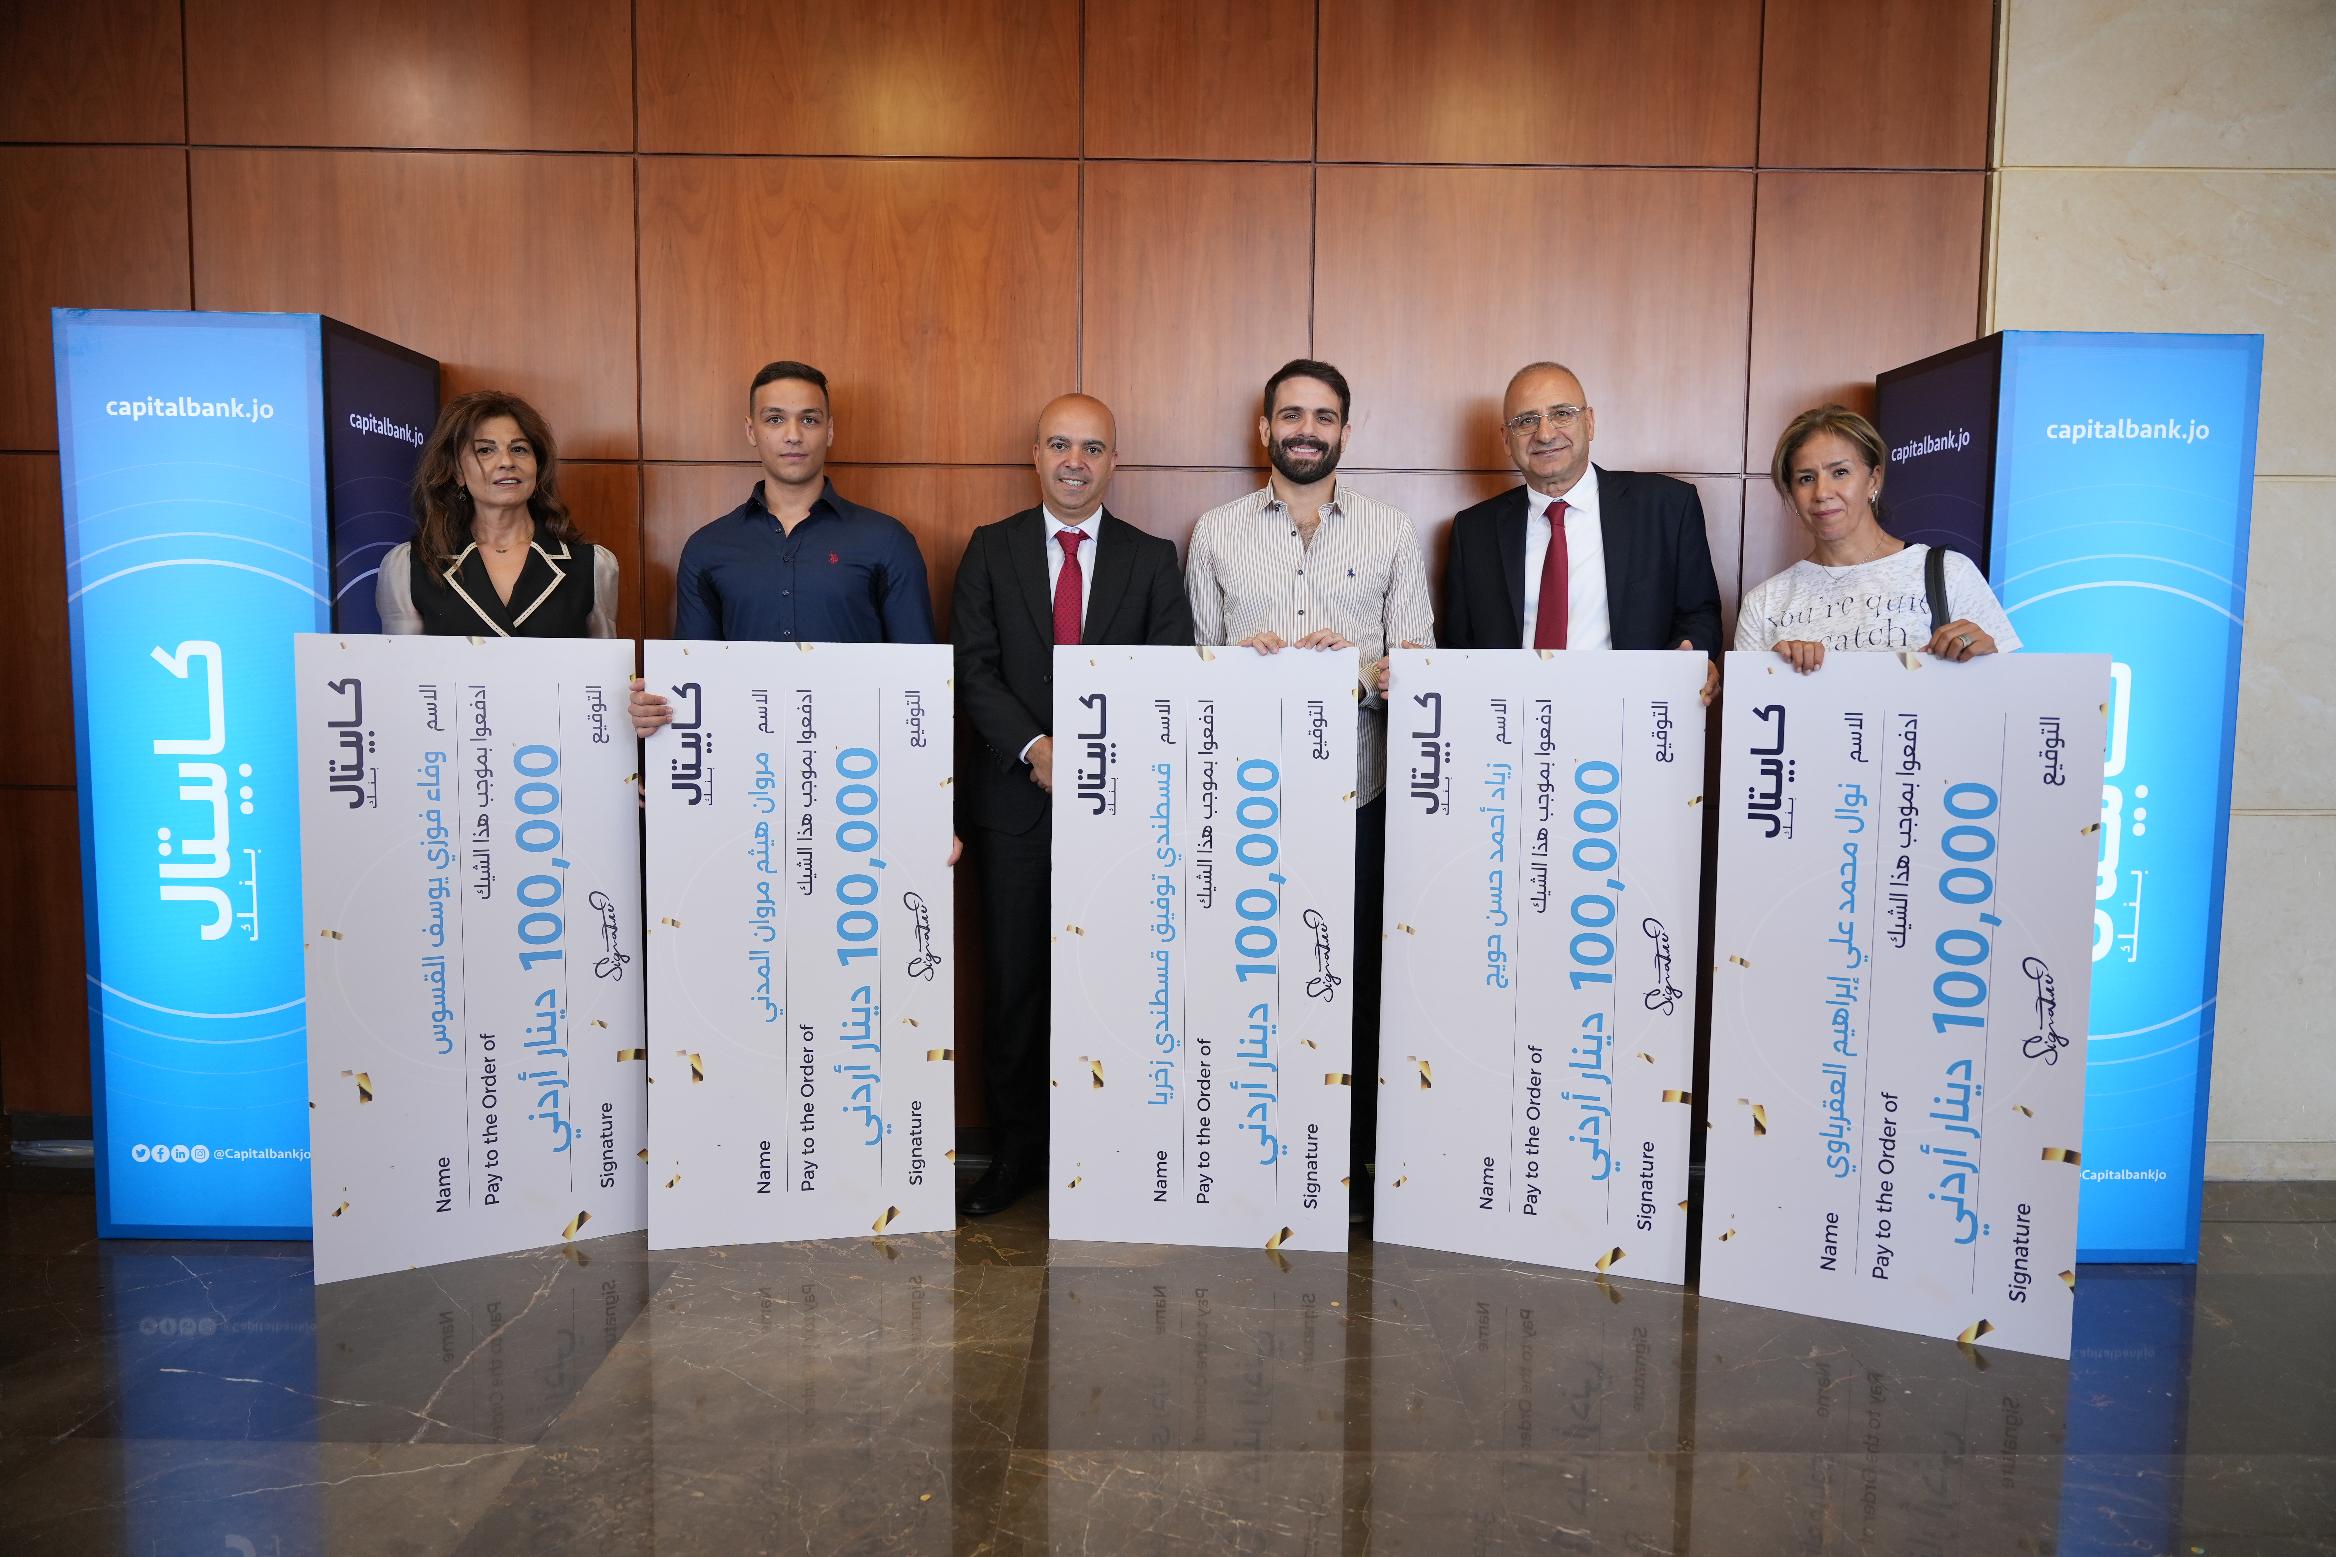 كابيتال بنك يحتفل مع الفائزين الخمسة الأوائل بالجائزة الكبرى لحملة التوفير أولها ذهب وآخرها كاش